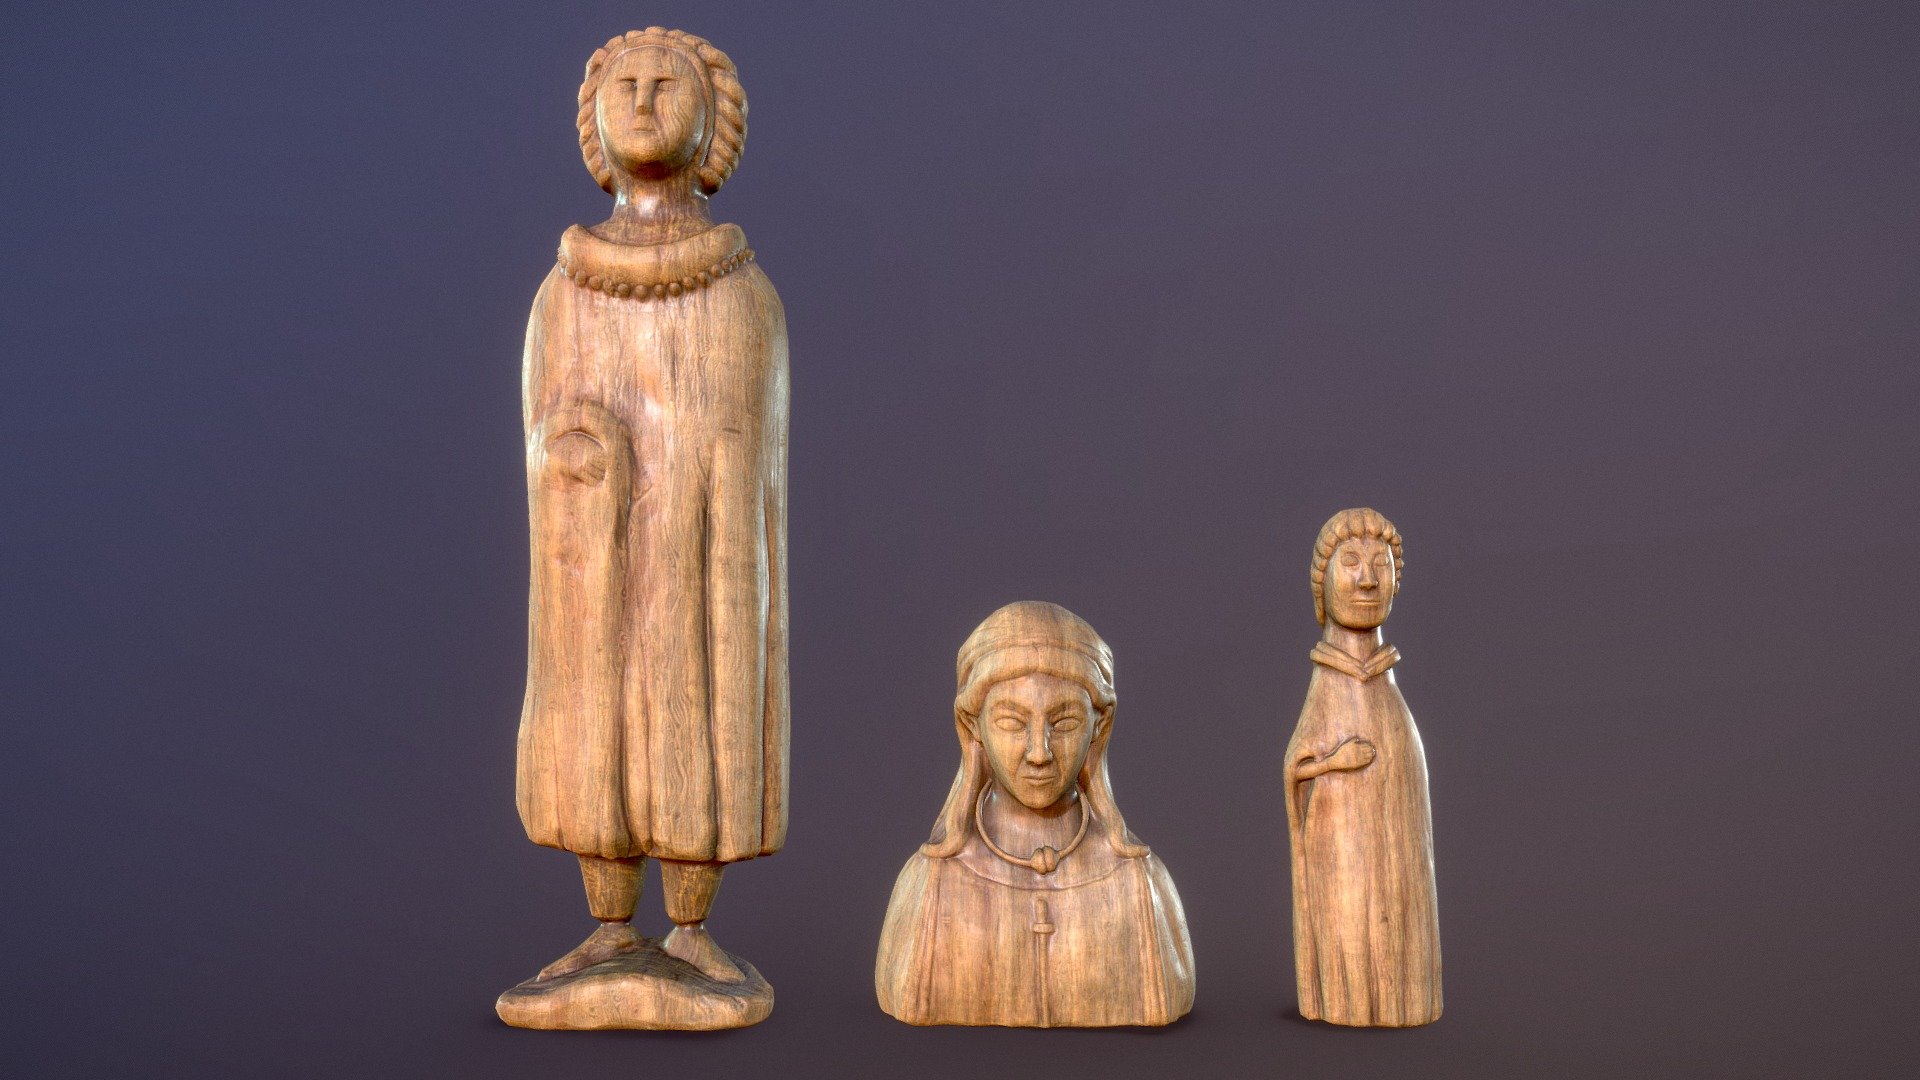 [FR] Statuettes gauloises/Ex-votos sculptées en bois, librement inspirées par celles retrouvées à la &ldquo;Source des Roches